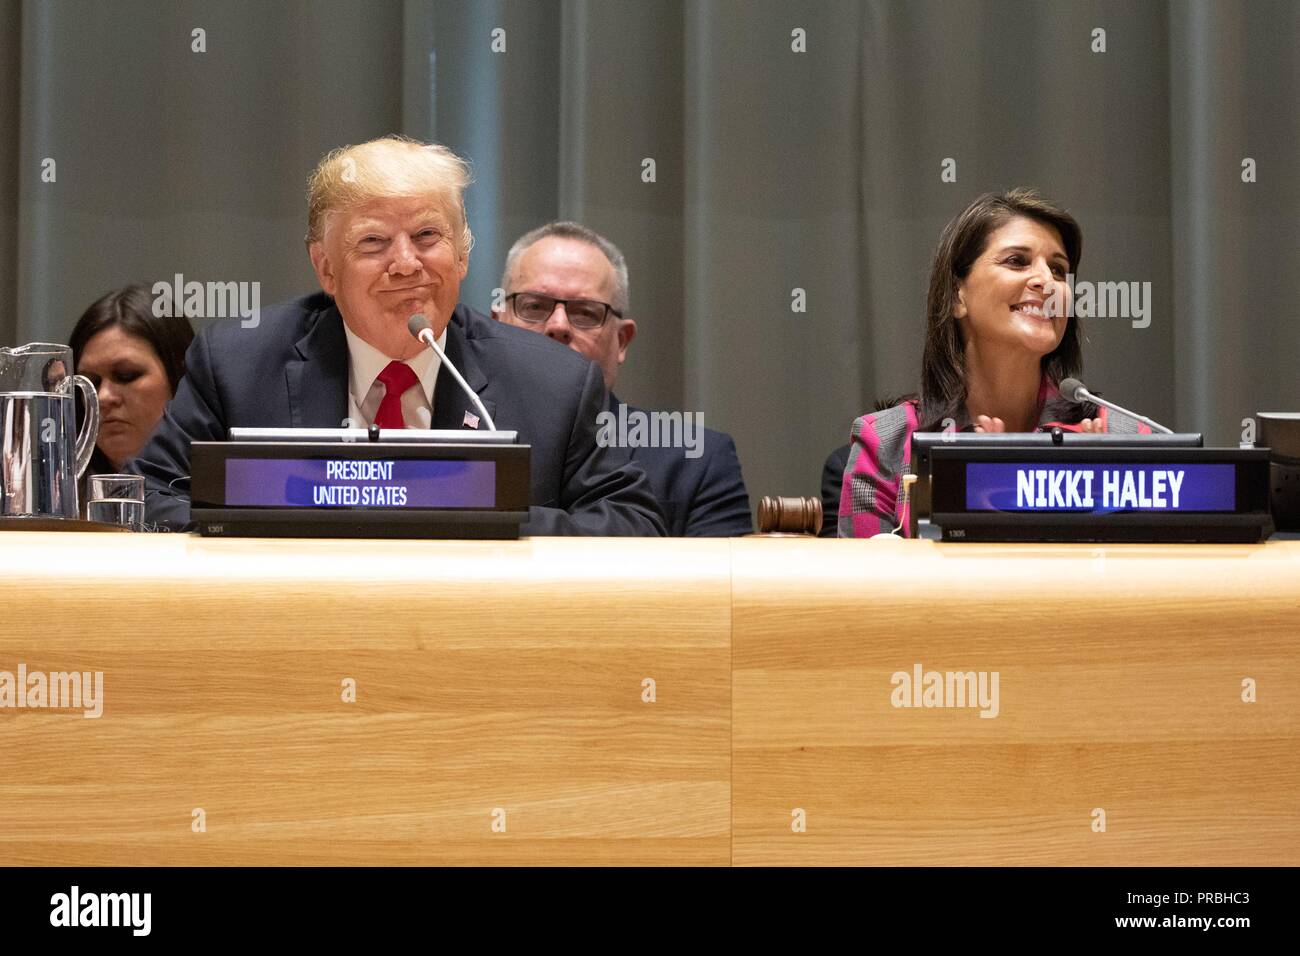 U.S presidente Donald Trump e U.N. Ambasciatore Nikki Haley partecipare a una chiamata globale di azione sul fenomeno della droga nel mondo presso la sede delle Nazioni Unite di settembre 24, 2018 a New York, New York. Foto Stock